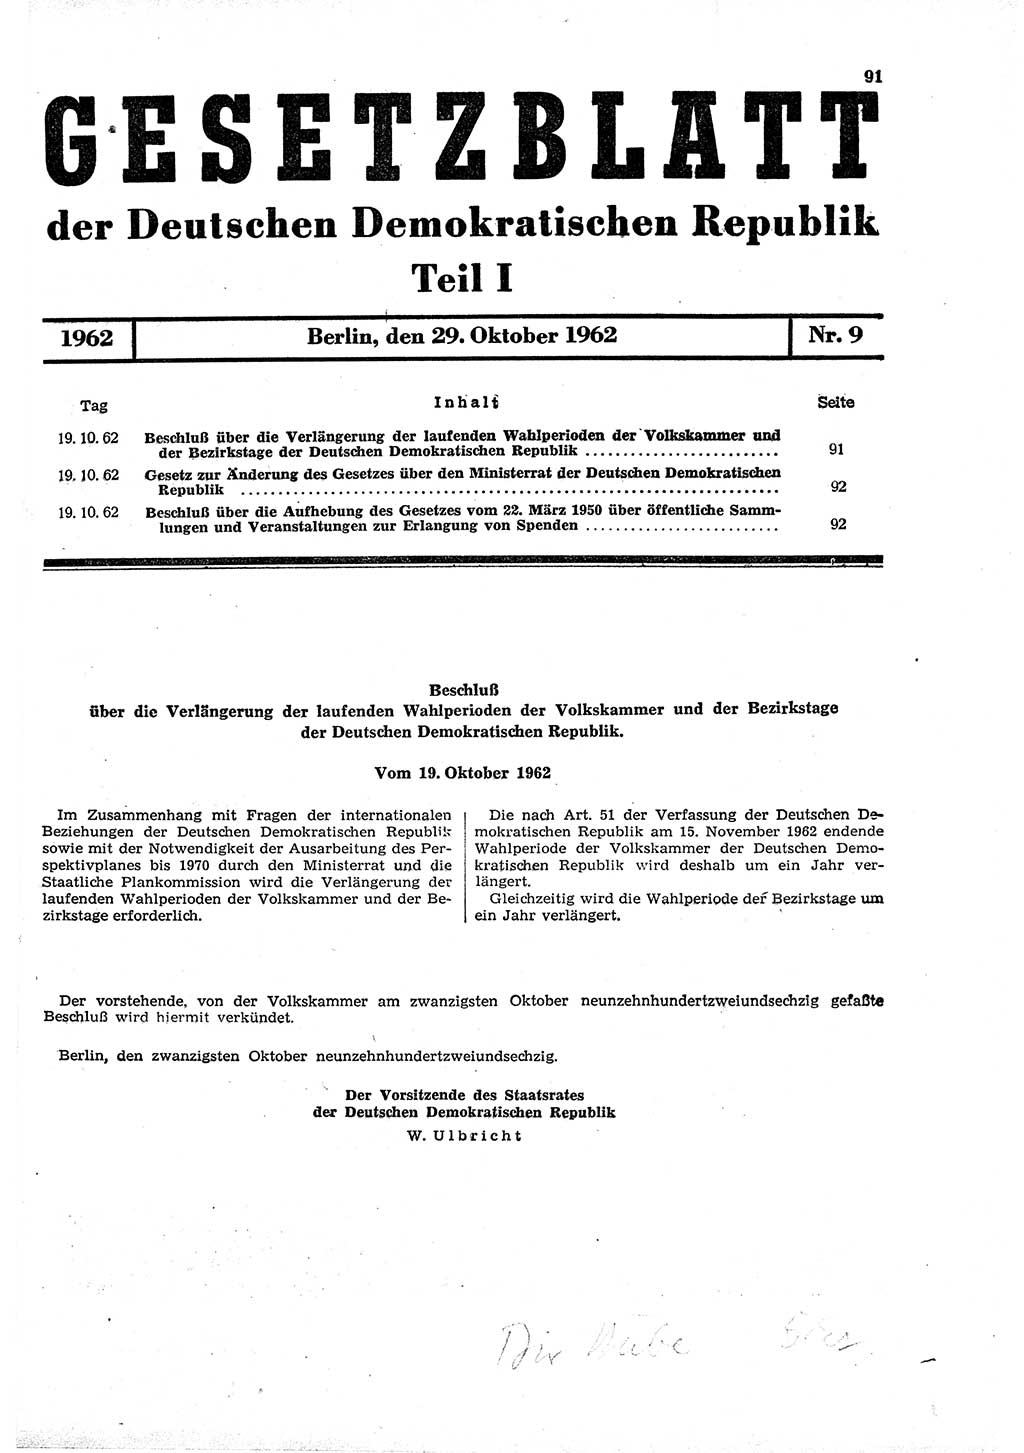 Gesetzblatt (GBl.) der Deutschen Demokratischen Republik (DDR) Teil Ⅰ 1962, Seite 91 (GBl. DDR Ⅰ 1962, S. 91)